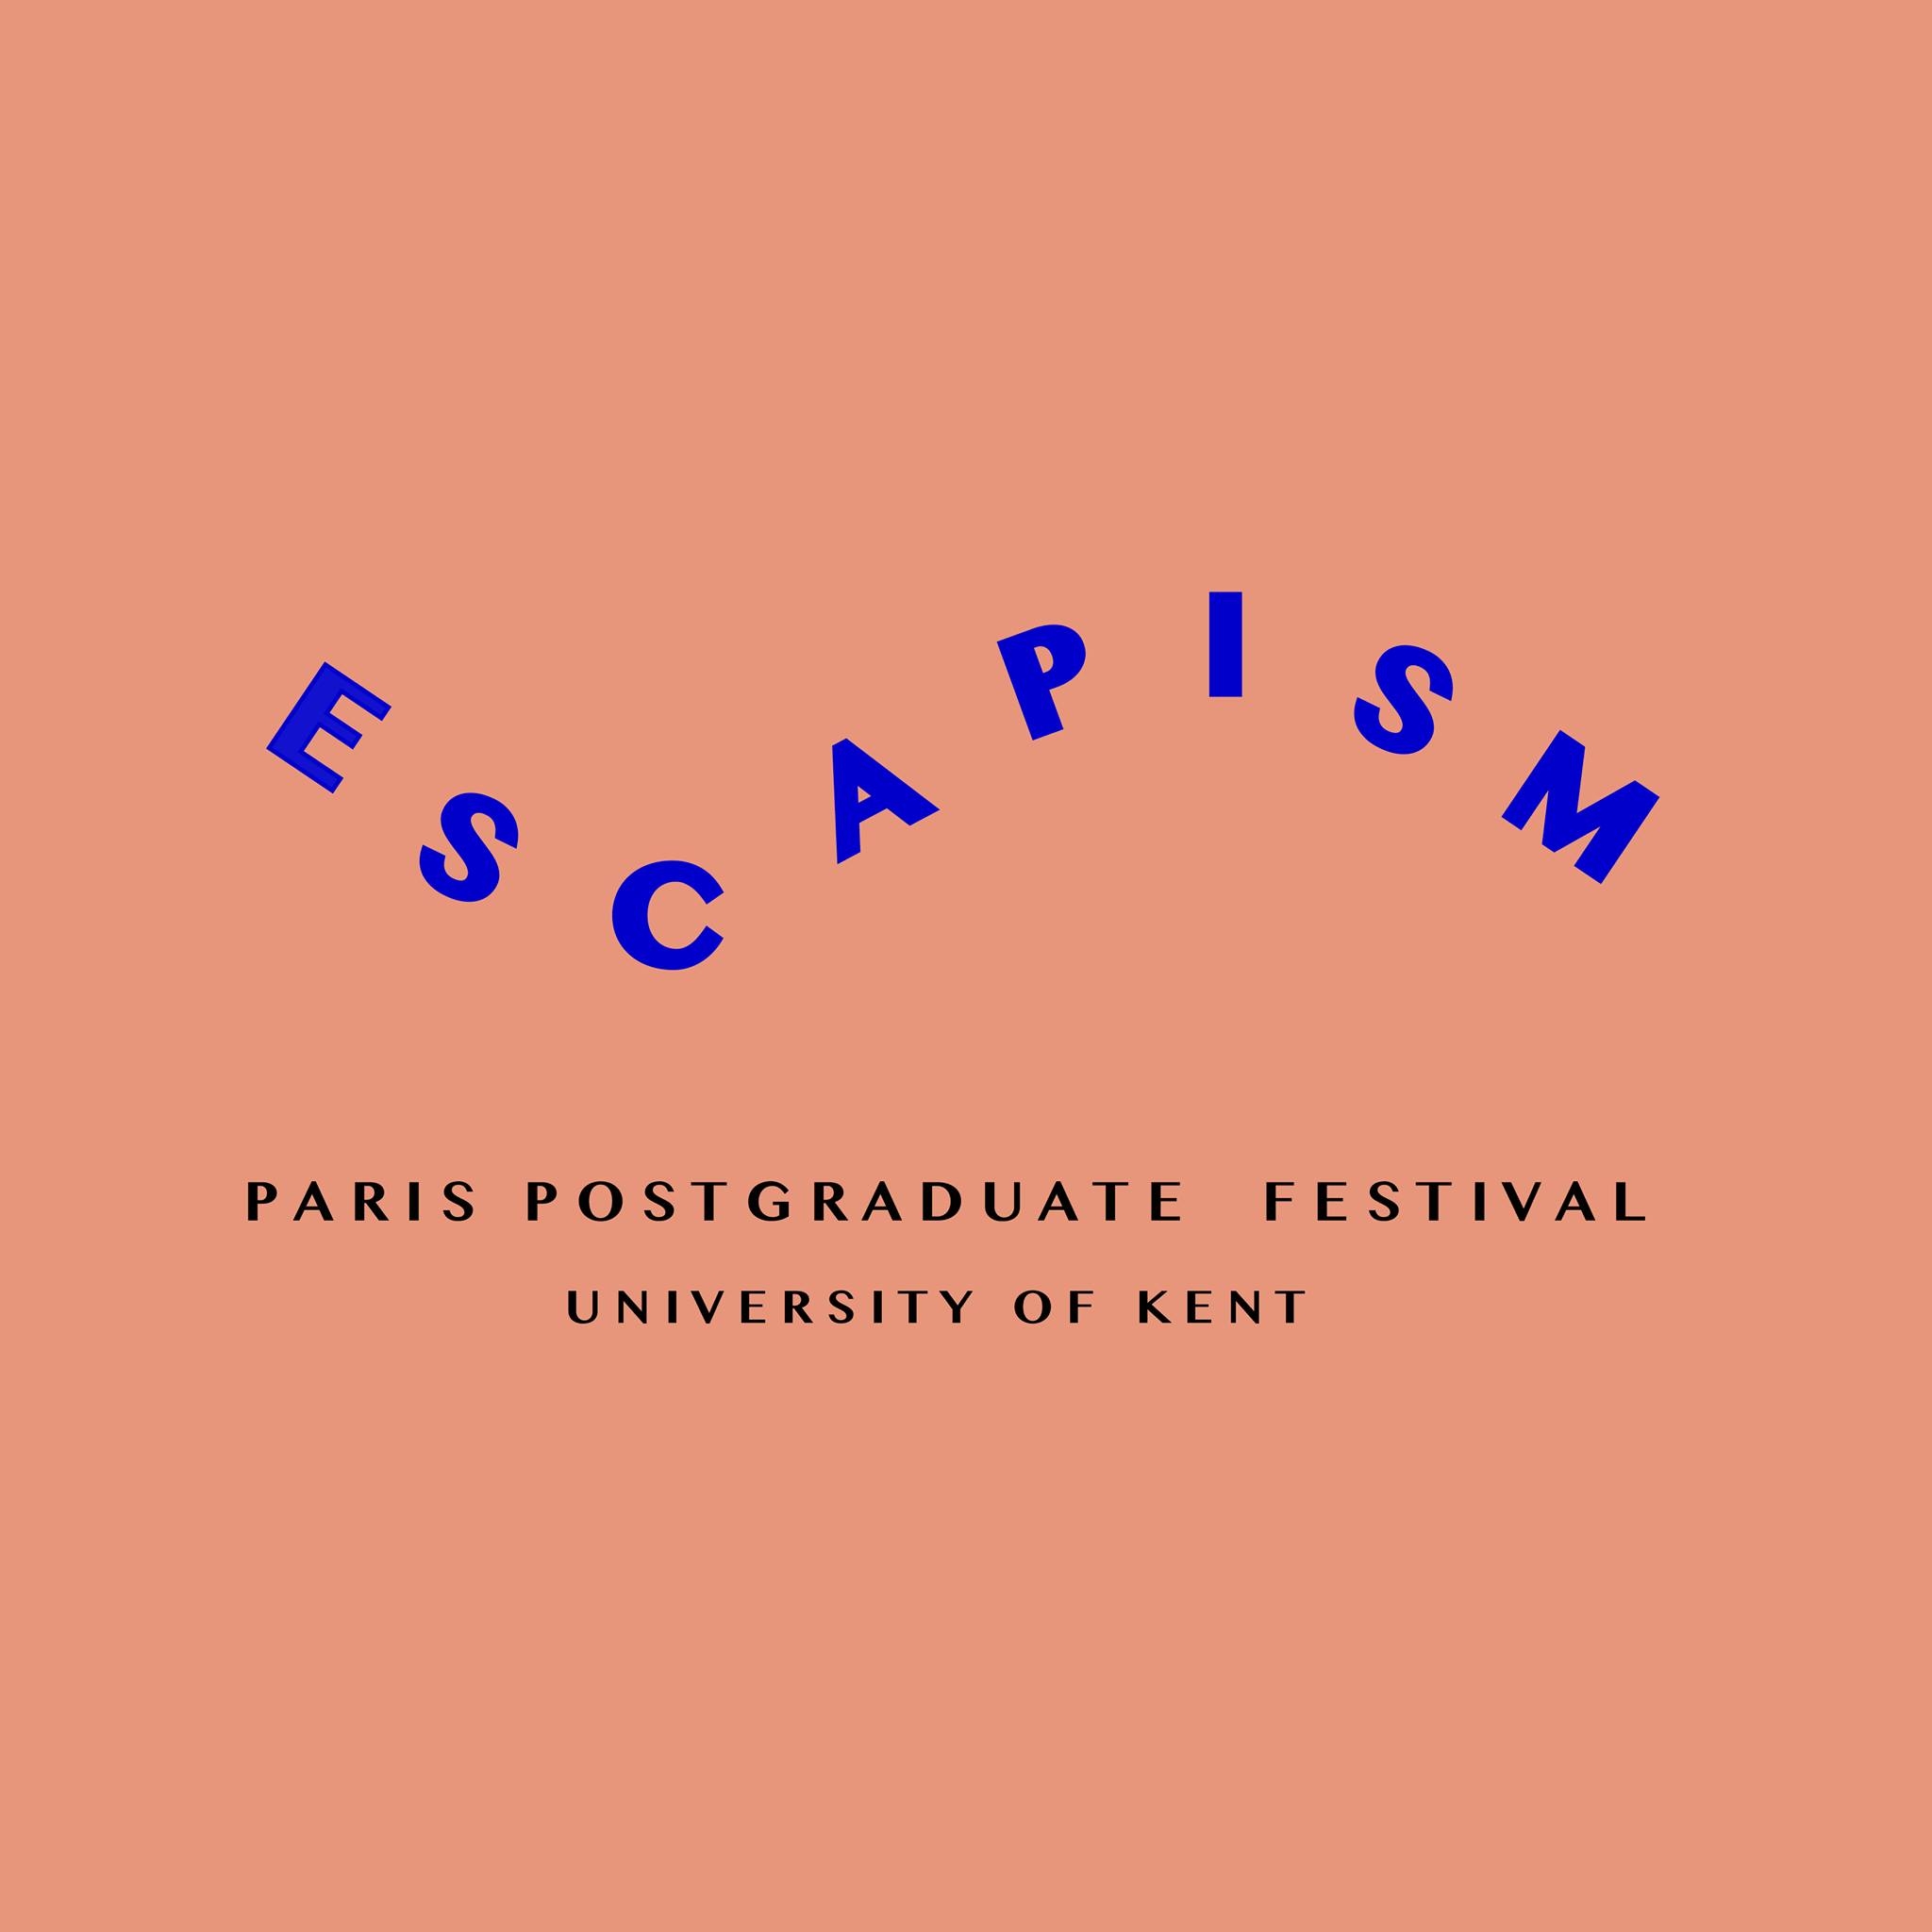 Postgraduate-Festival-masters-in-paris